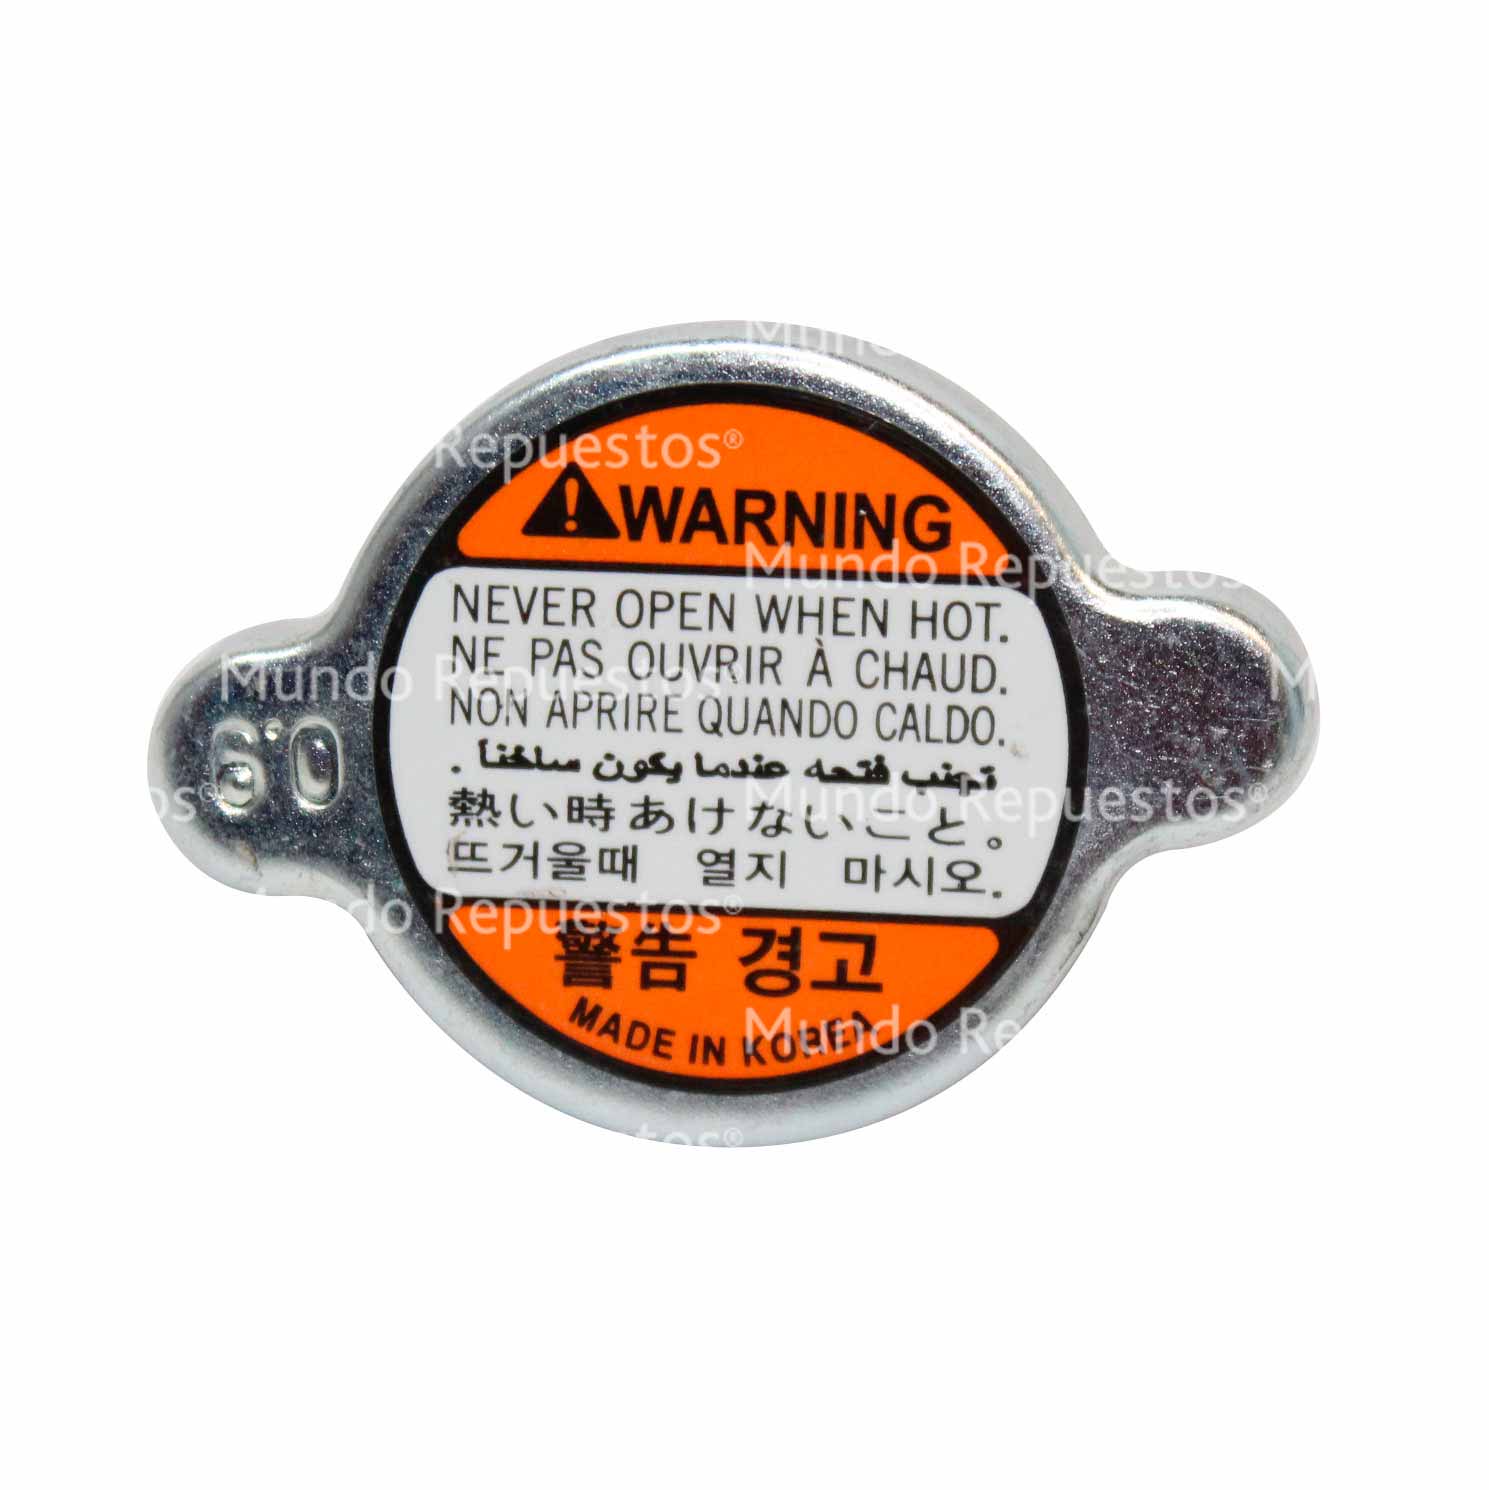 Tapa radiador marca Fabricas korea disponible en Mundo Repuestos